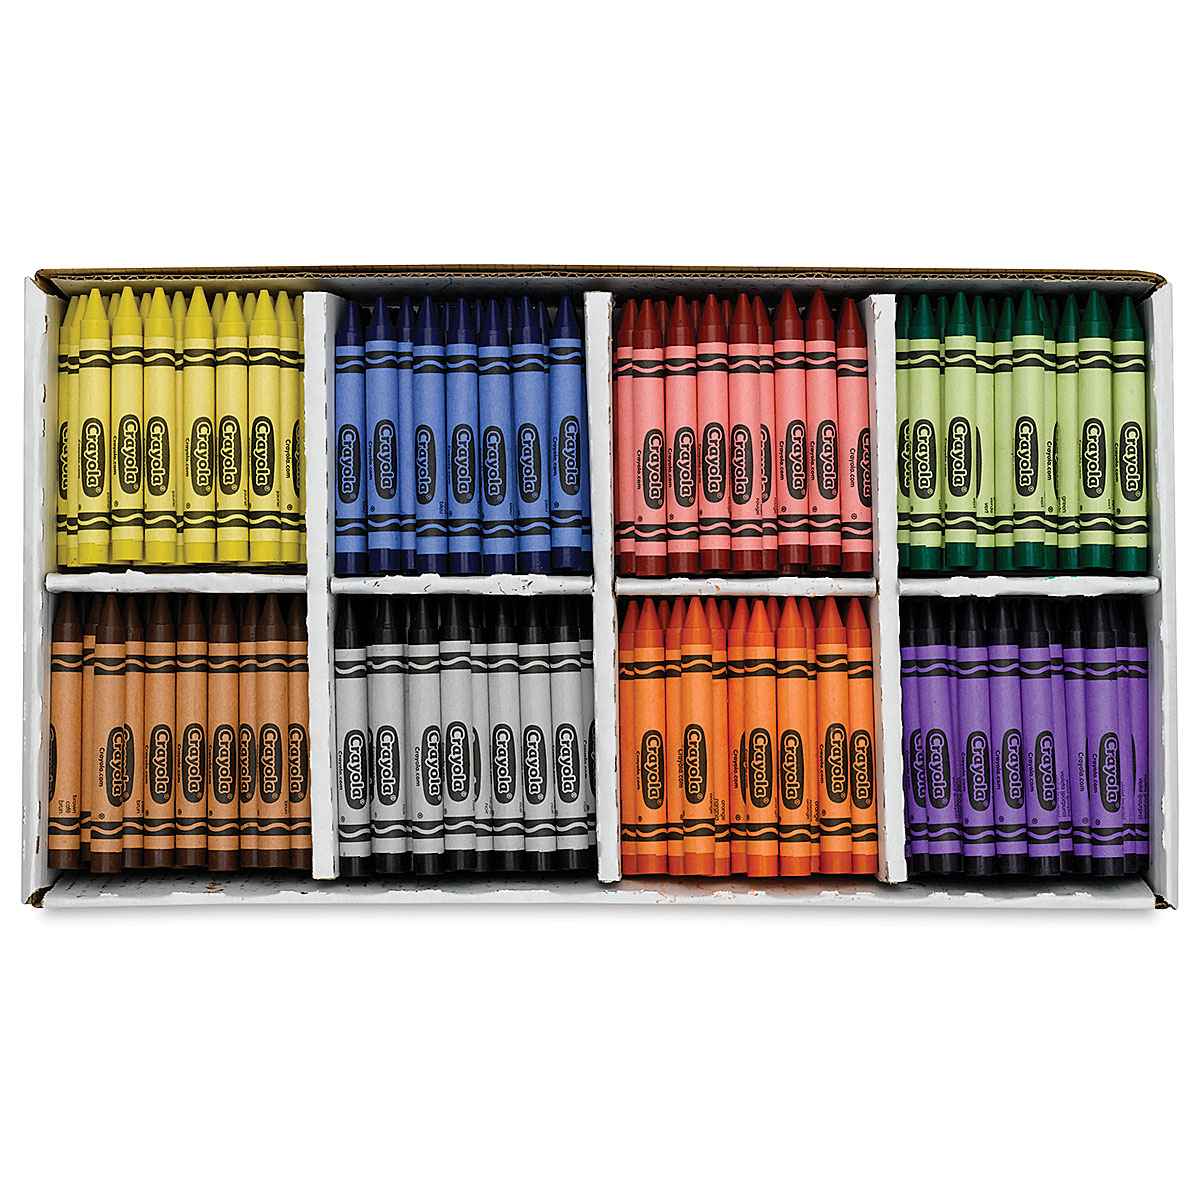  Crayon Classpack, Large Crayons, 400ct, Bulk